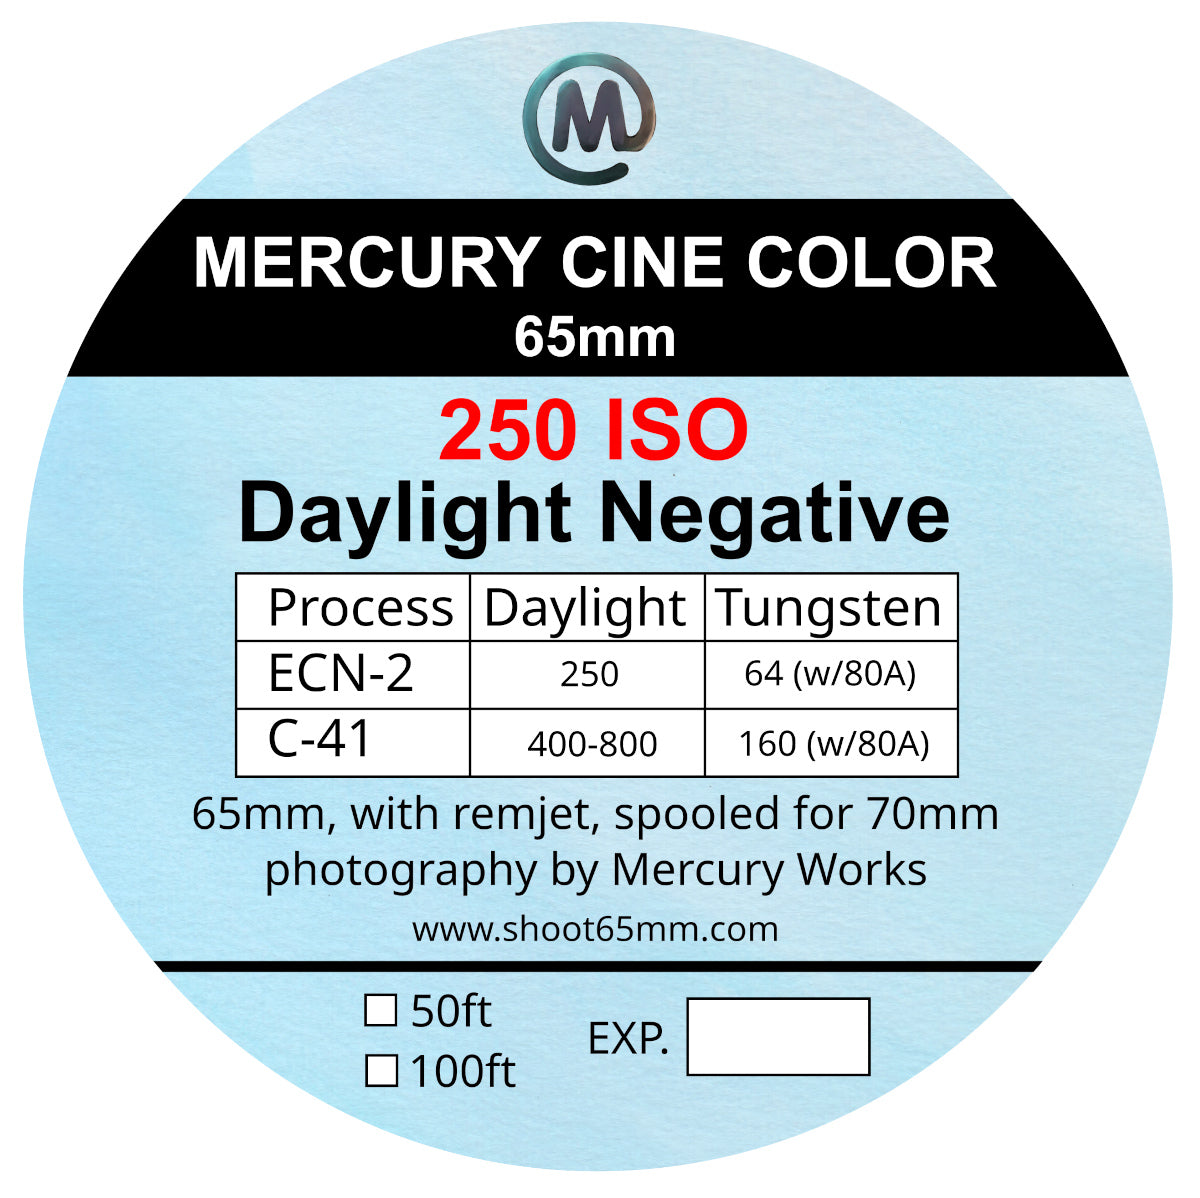 Mercury Cine Color 250 - 65mm film